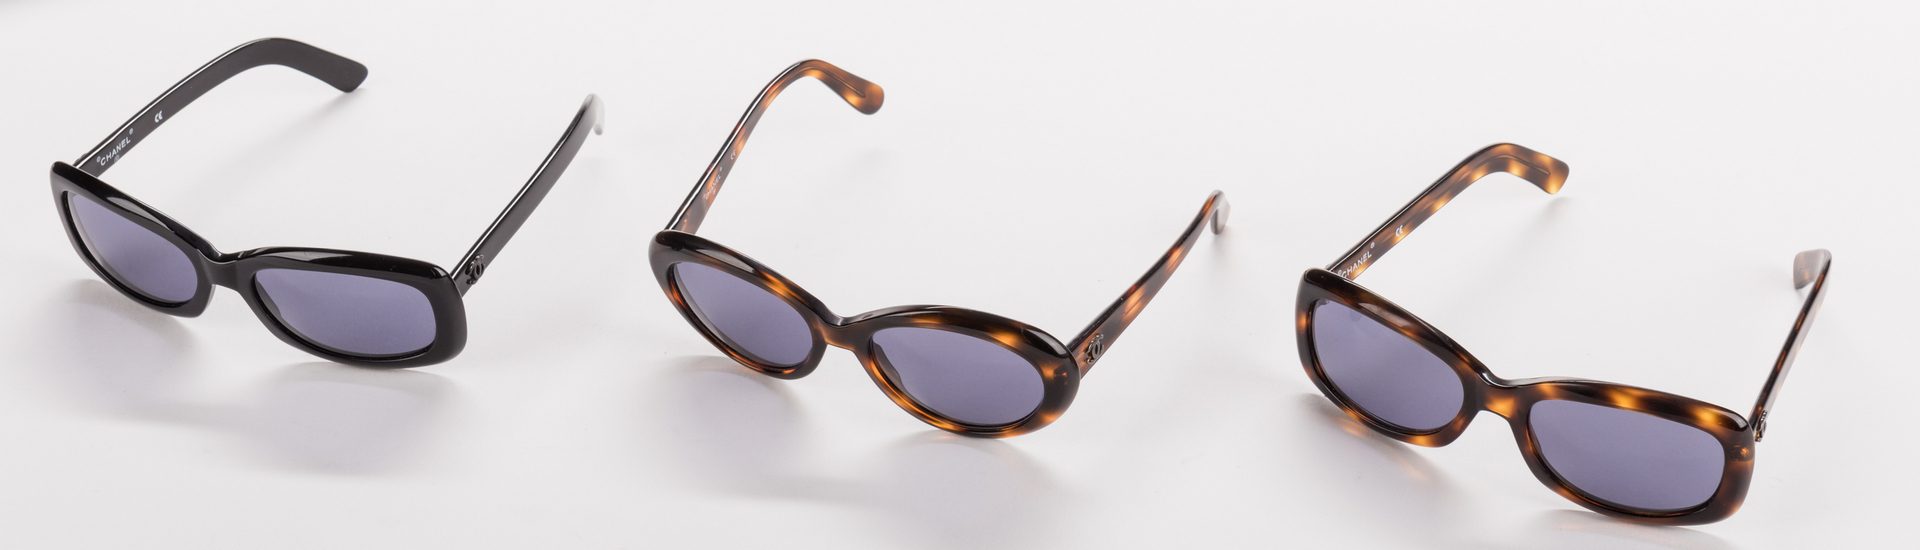 Lot 837: 5 Pairs of Designer Sunglasses, inc. Prada, Chanel